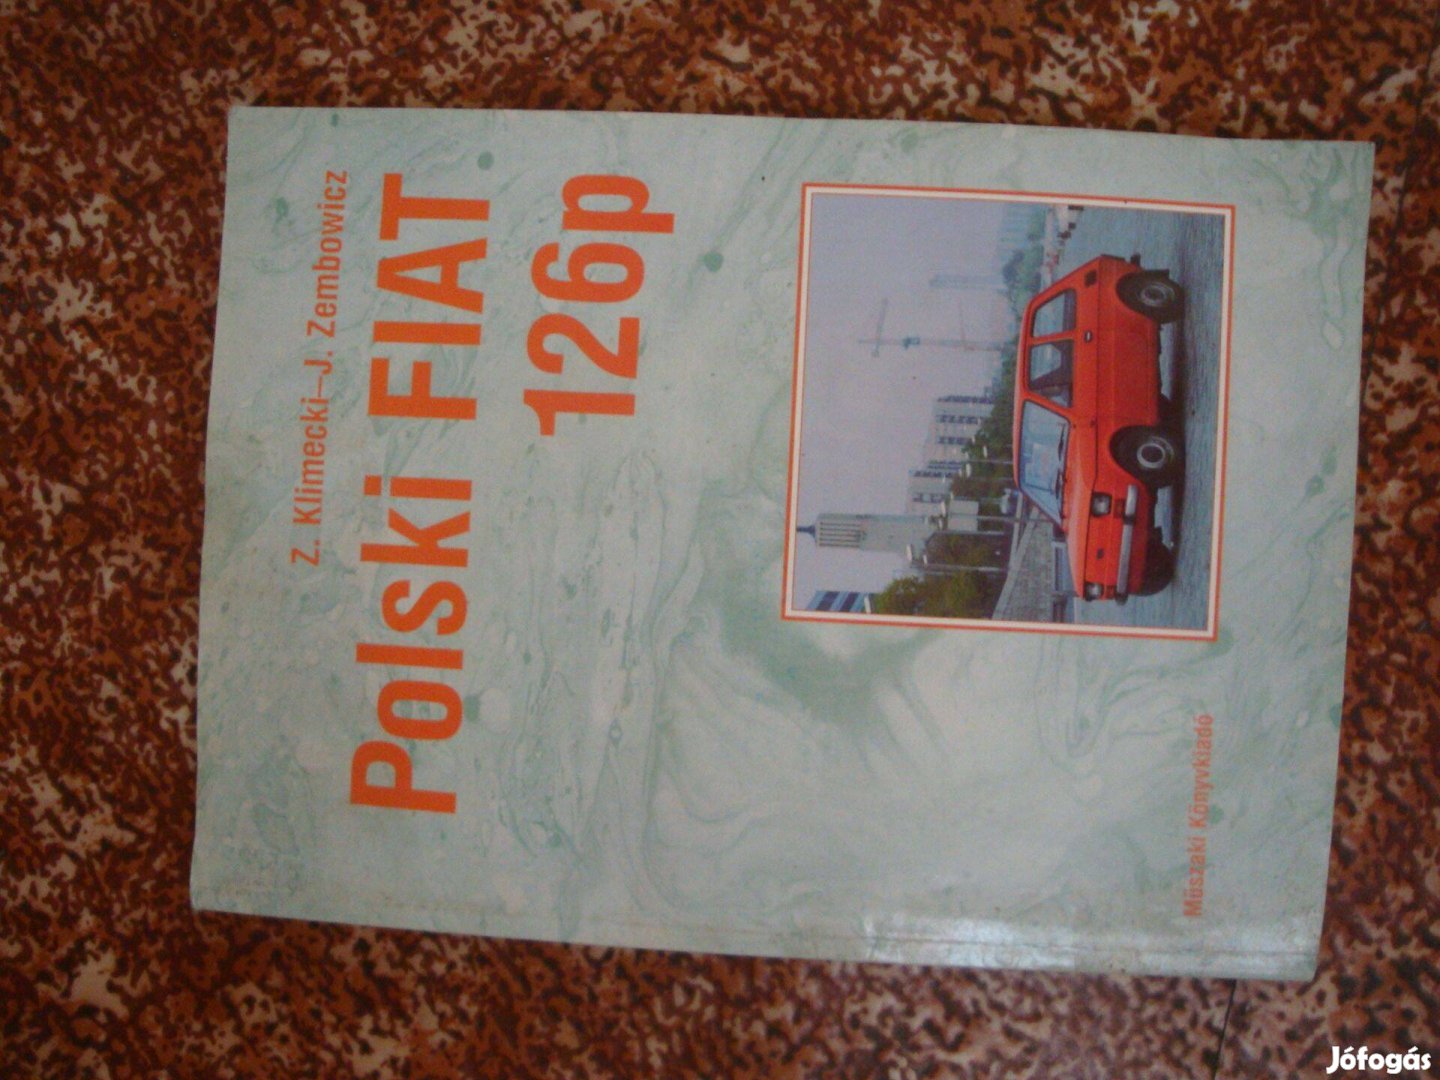 Polski-126 Műszaki adatai e könyv ben (ujszerű